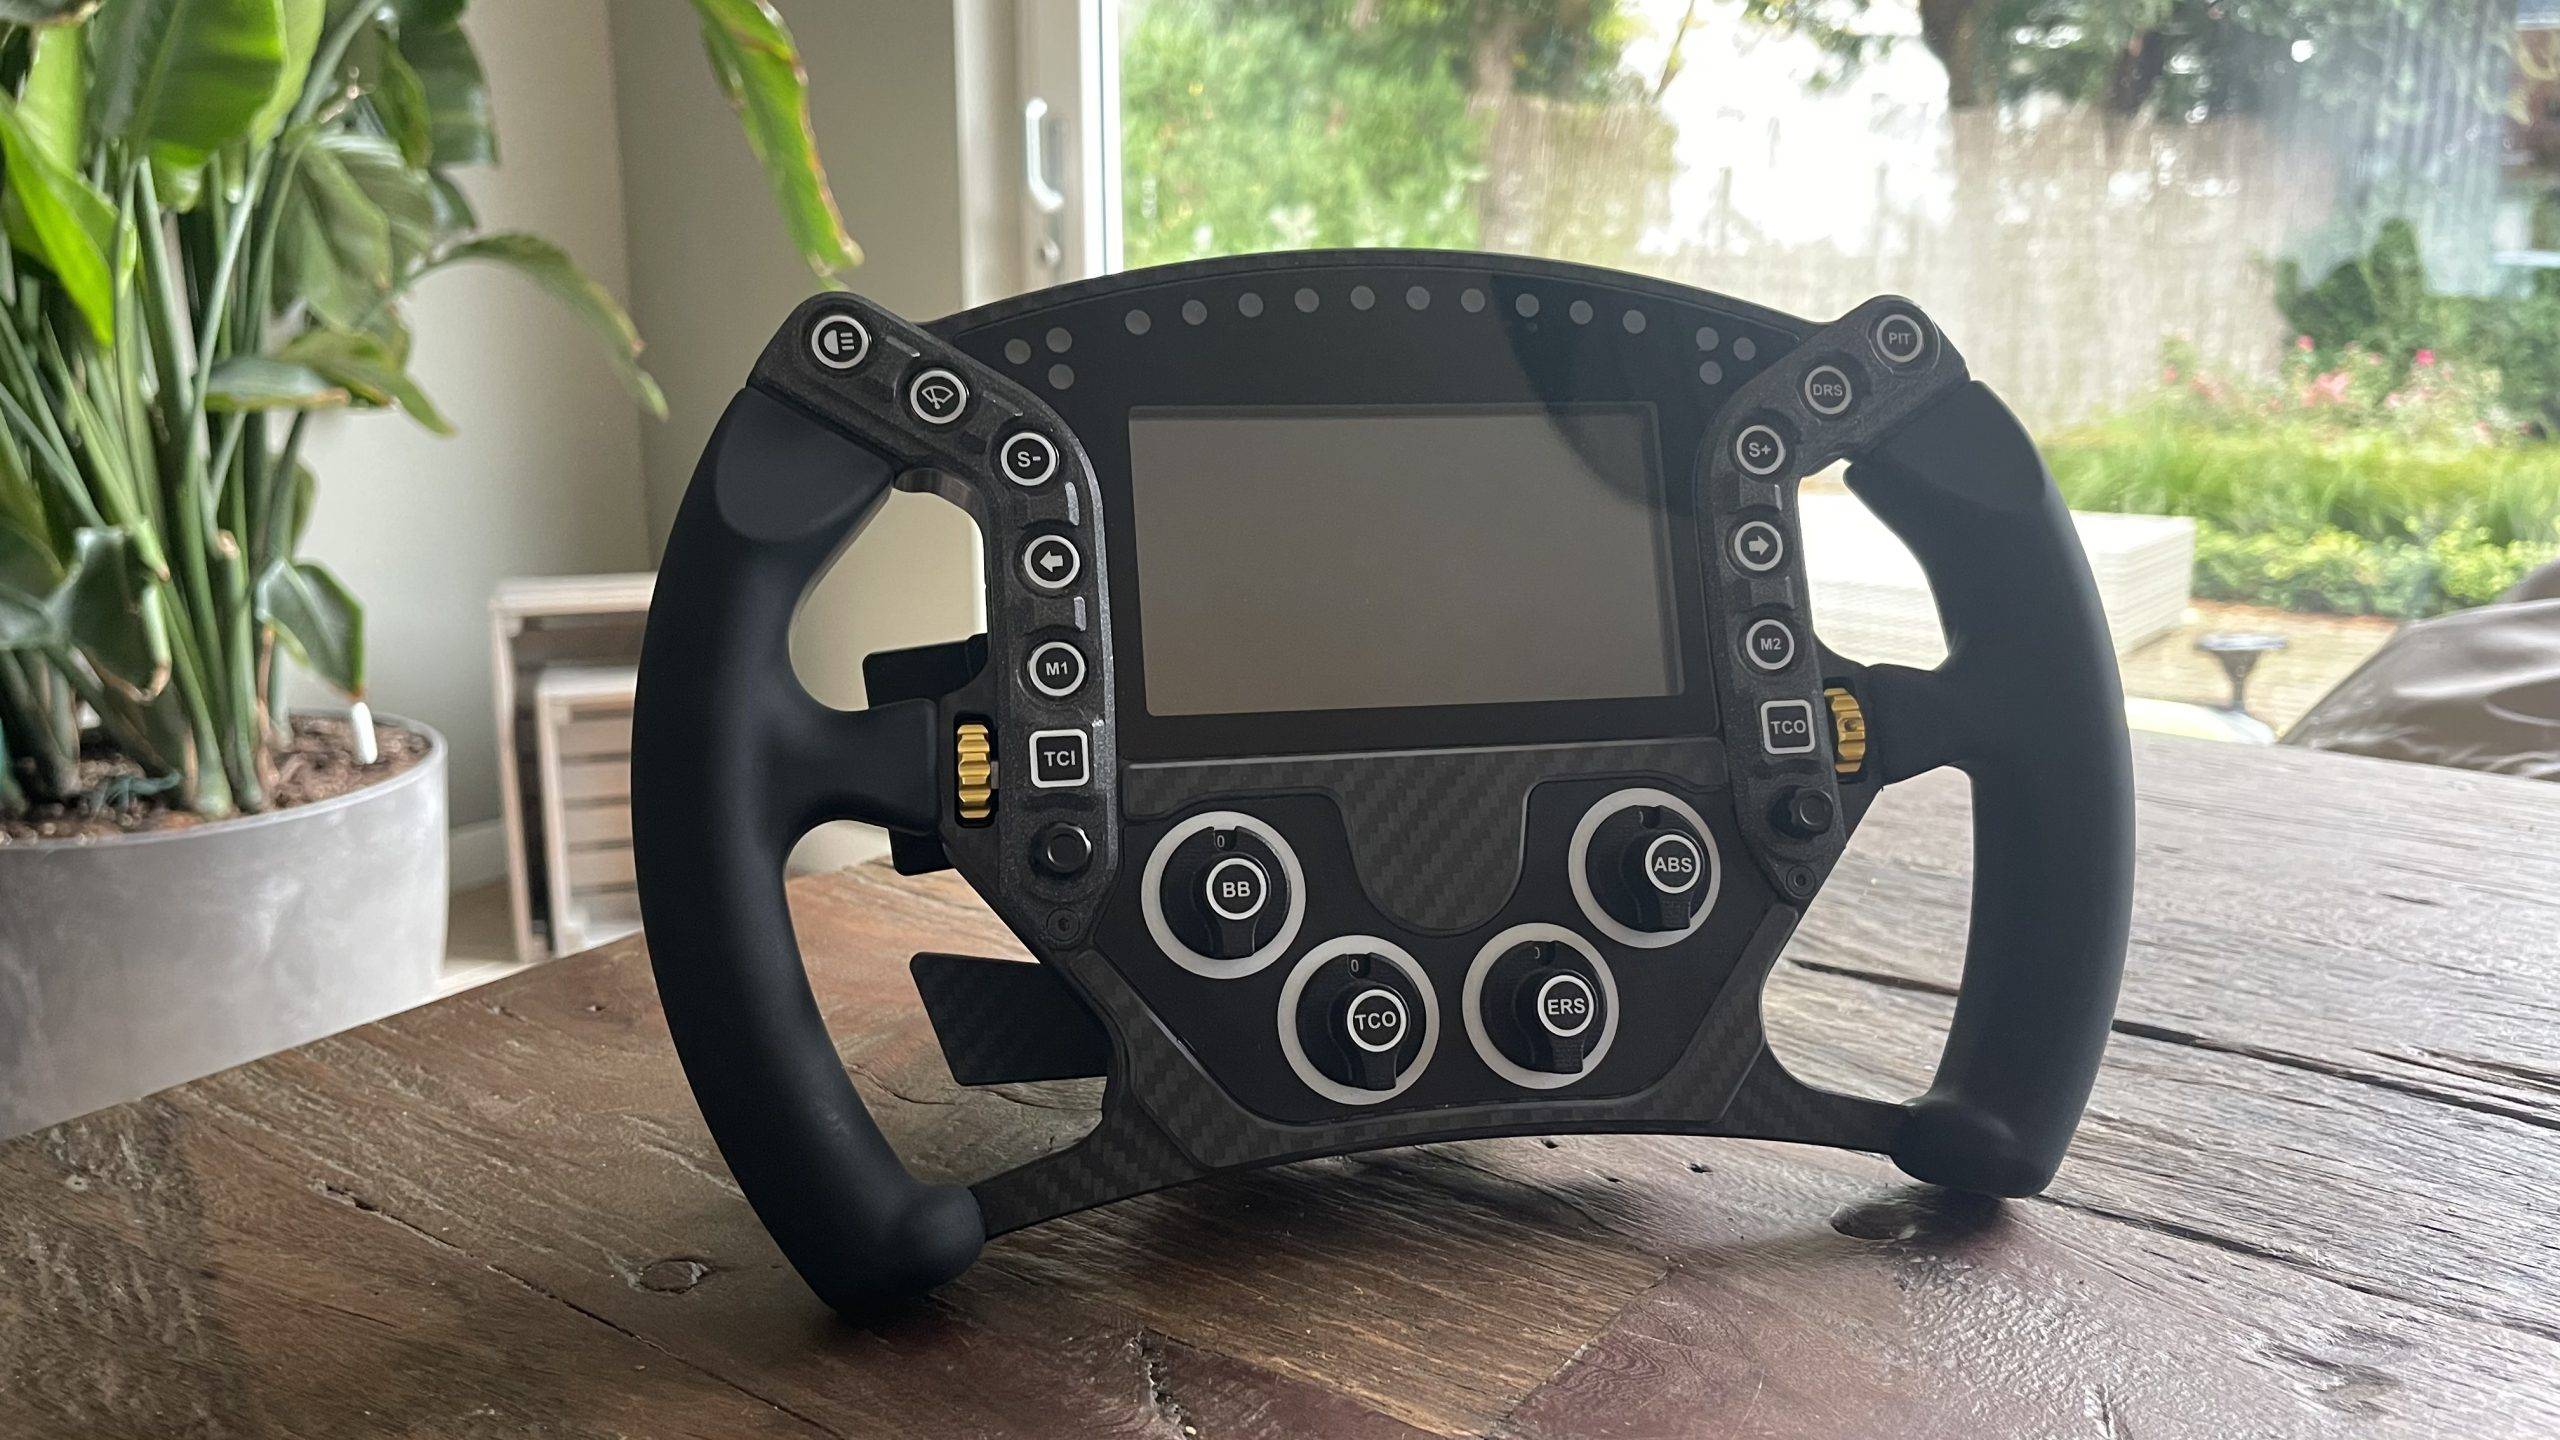 Bouw Eenvoudig Je DIY Sim Racing Wheel Met De Pokornyi Engineering HYP-R DIY Files. Dit Is Hoe!